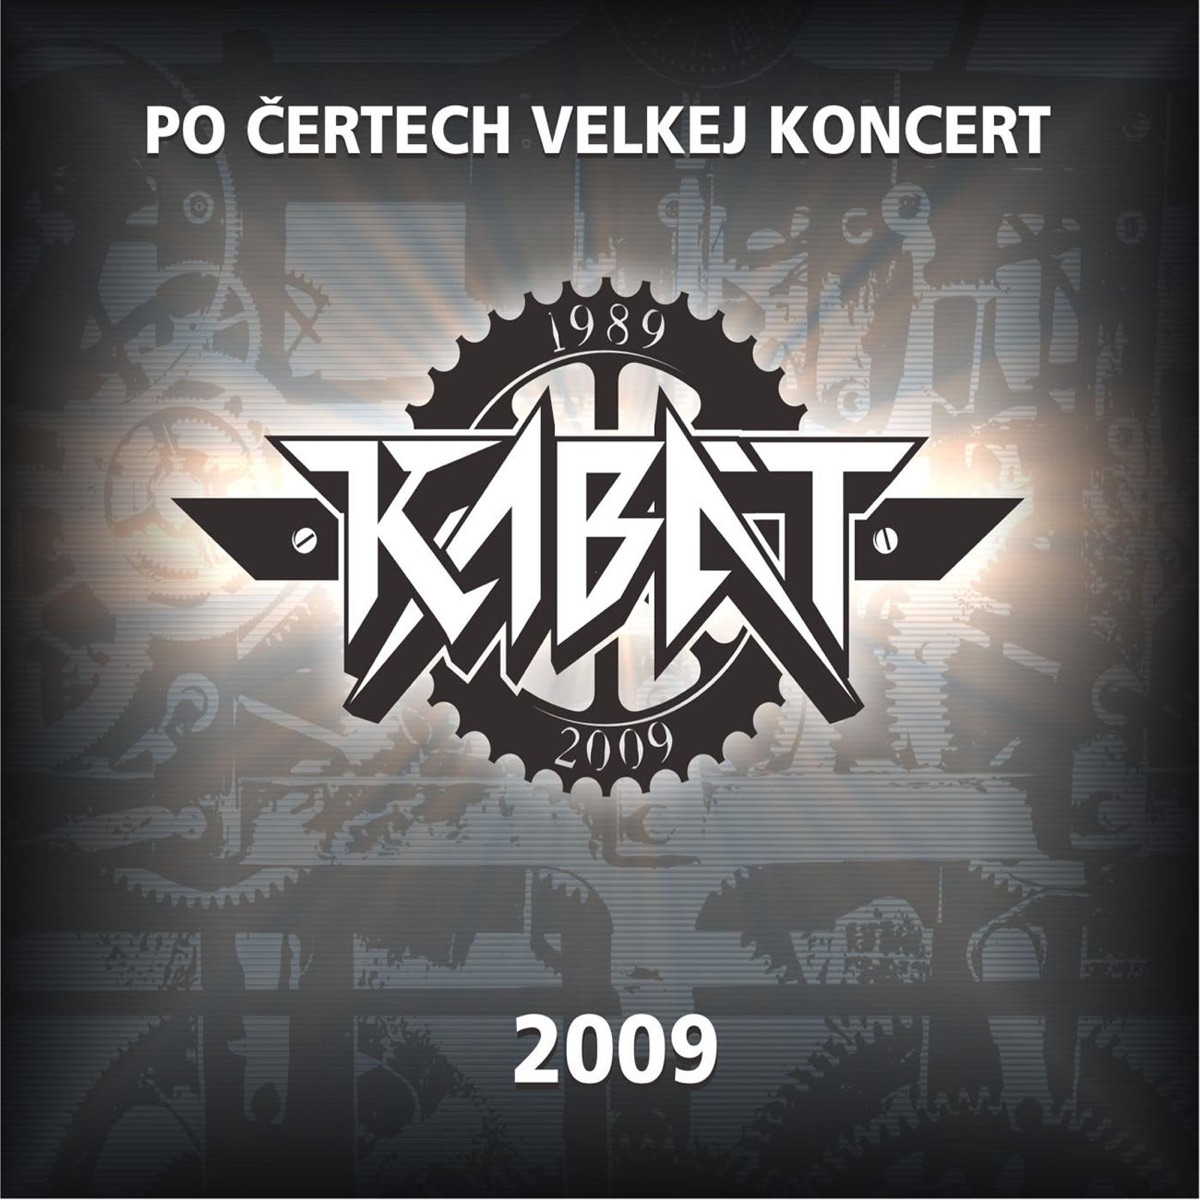 Cert Na Koze Jel - Album by Kabát - Apple Music